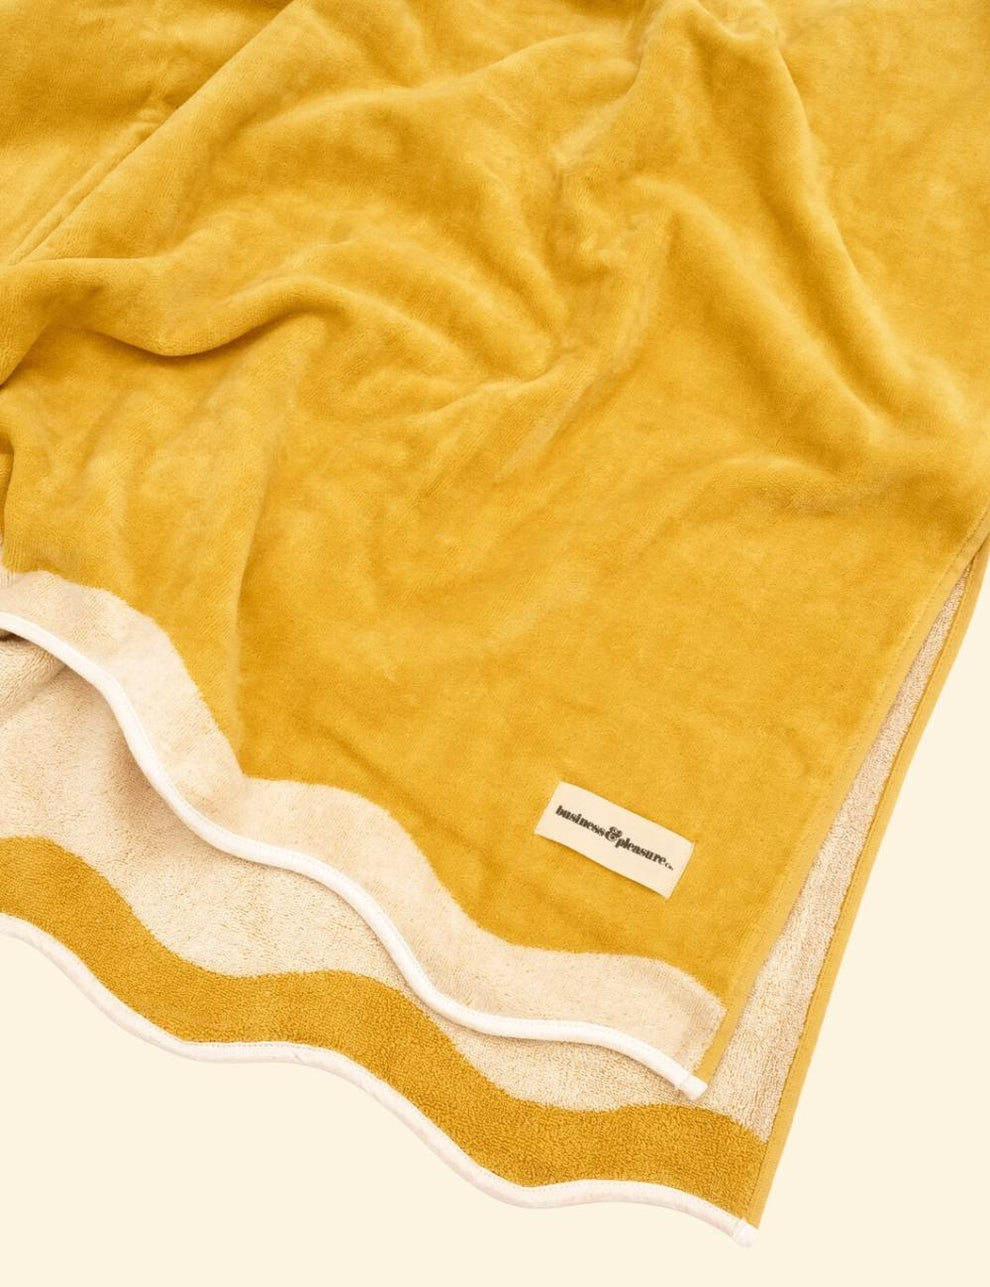 Mustard Yellow Luxury Beach Towel